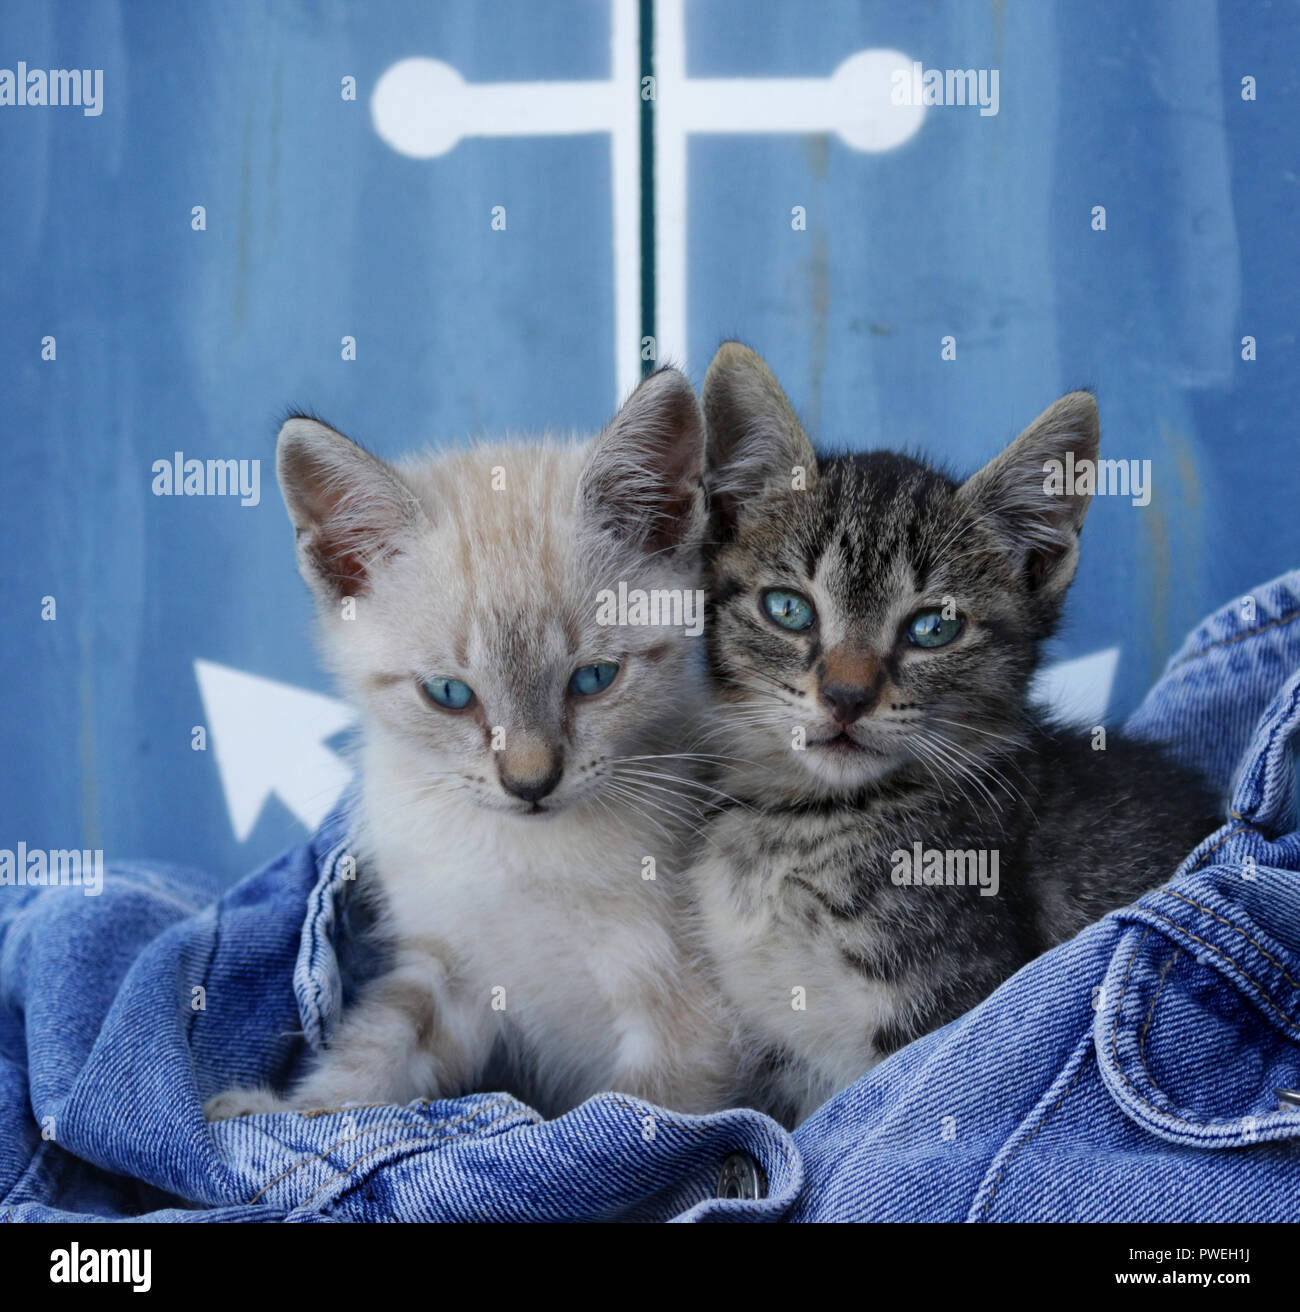 Due gattini, 7 settimane di età, seal tabby point e black tabby, seduti vicino insieme in un paio di jeans Foto Stock